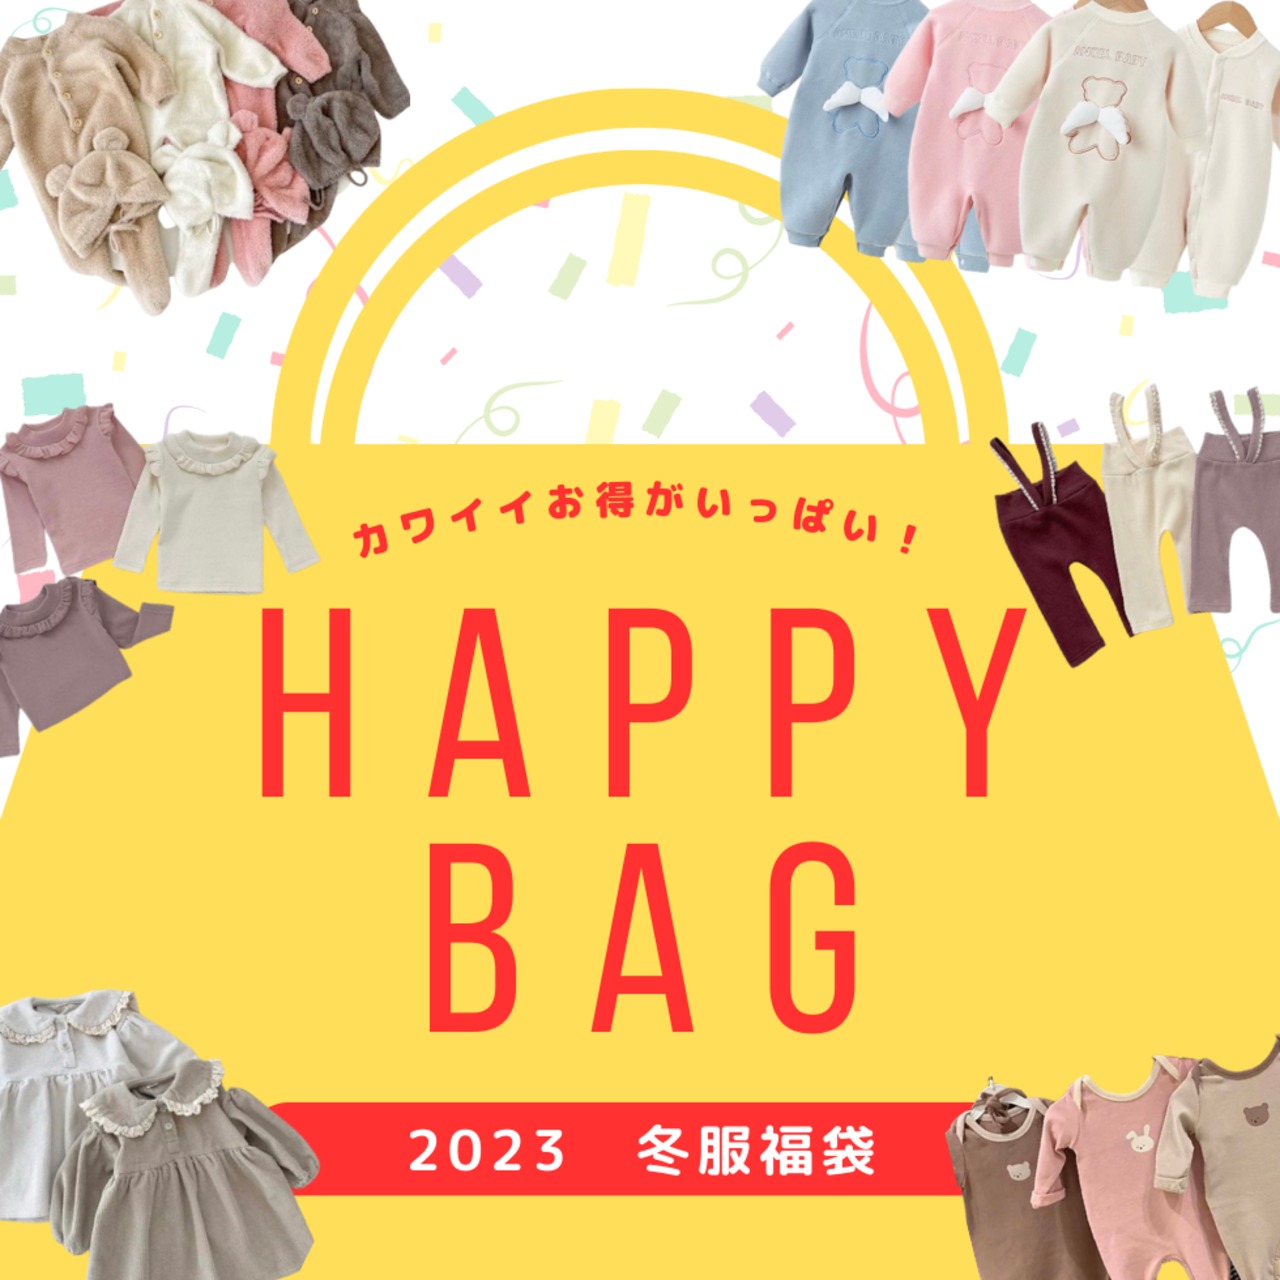 【即納品】HAPPY BAG 可愛い冬服♡